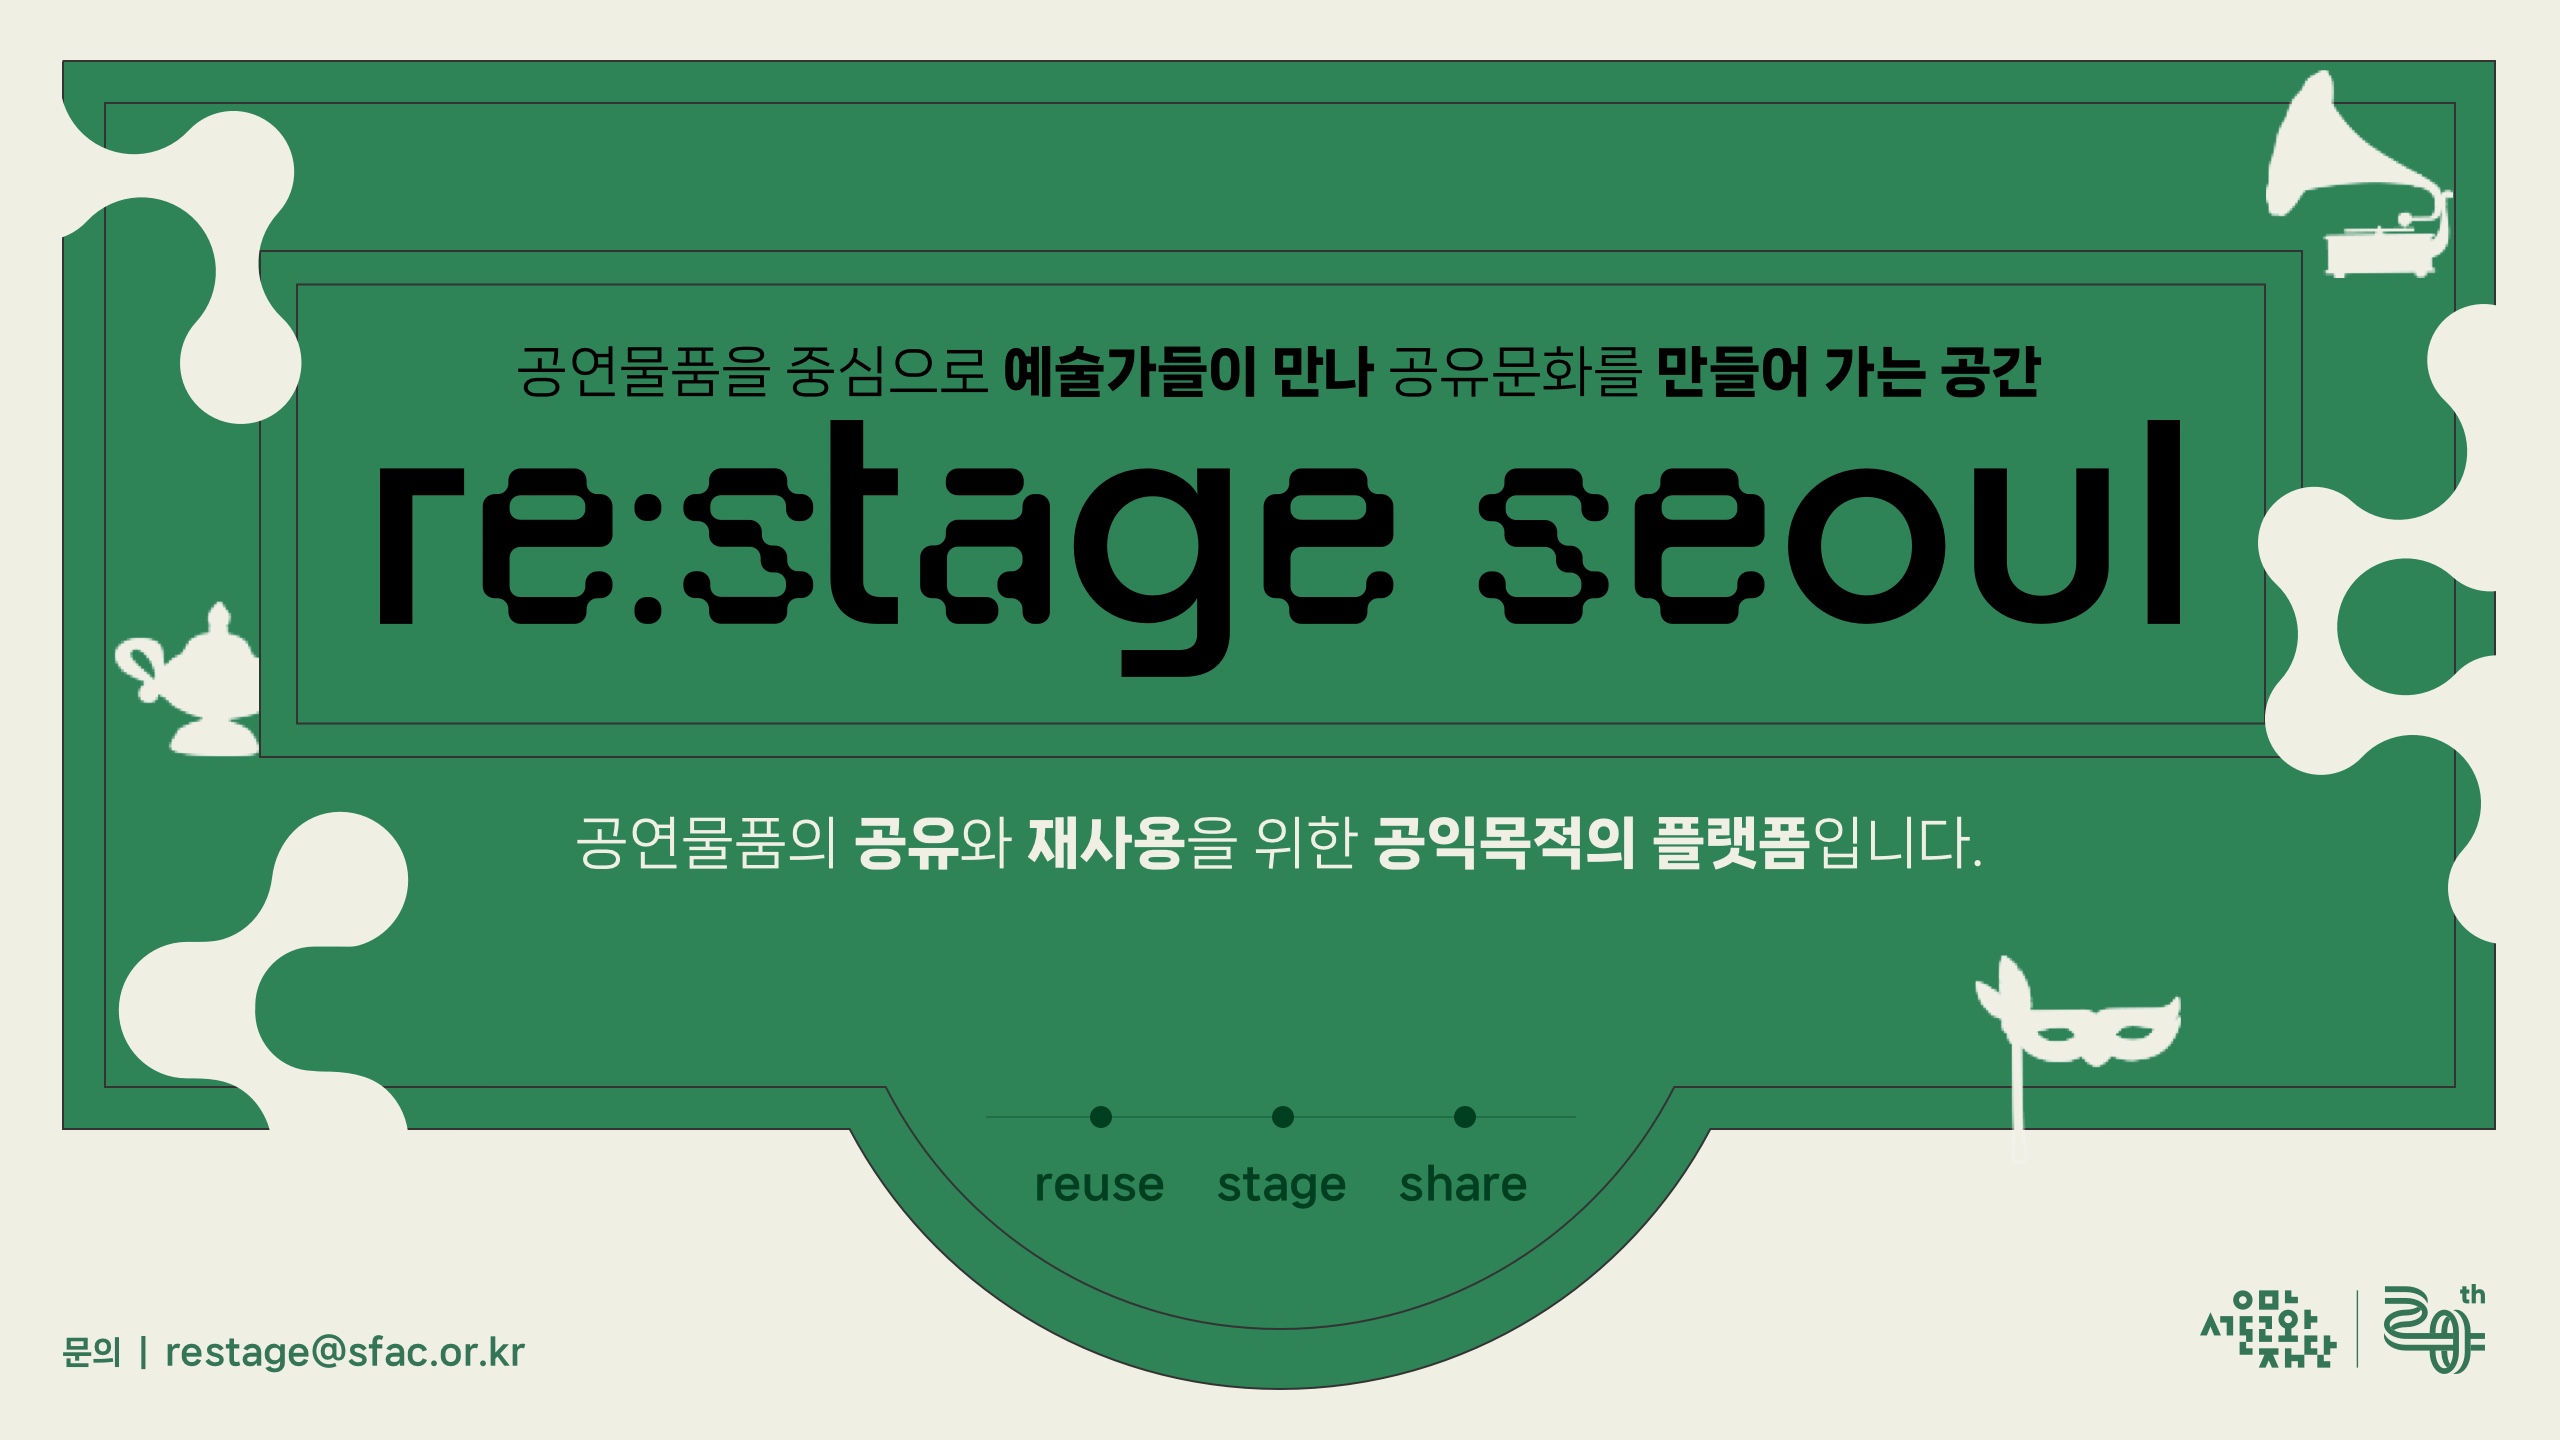 공연물품을 중심으로 예술가들이 만나 공유문화를 만들어 가는 공간
re:stage seoul
공연물품의 공유와 재사용을 위한 공익목적의 플랫폼입니다
reuse stage share
문의 : restage@sfac.or.kr